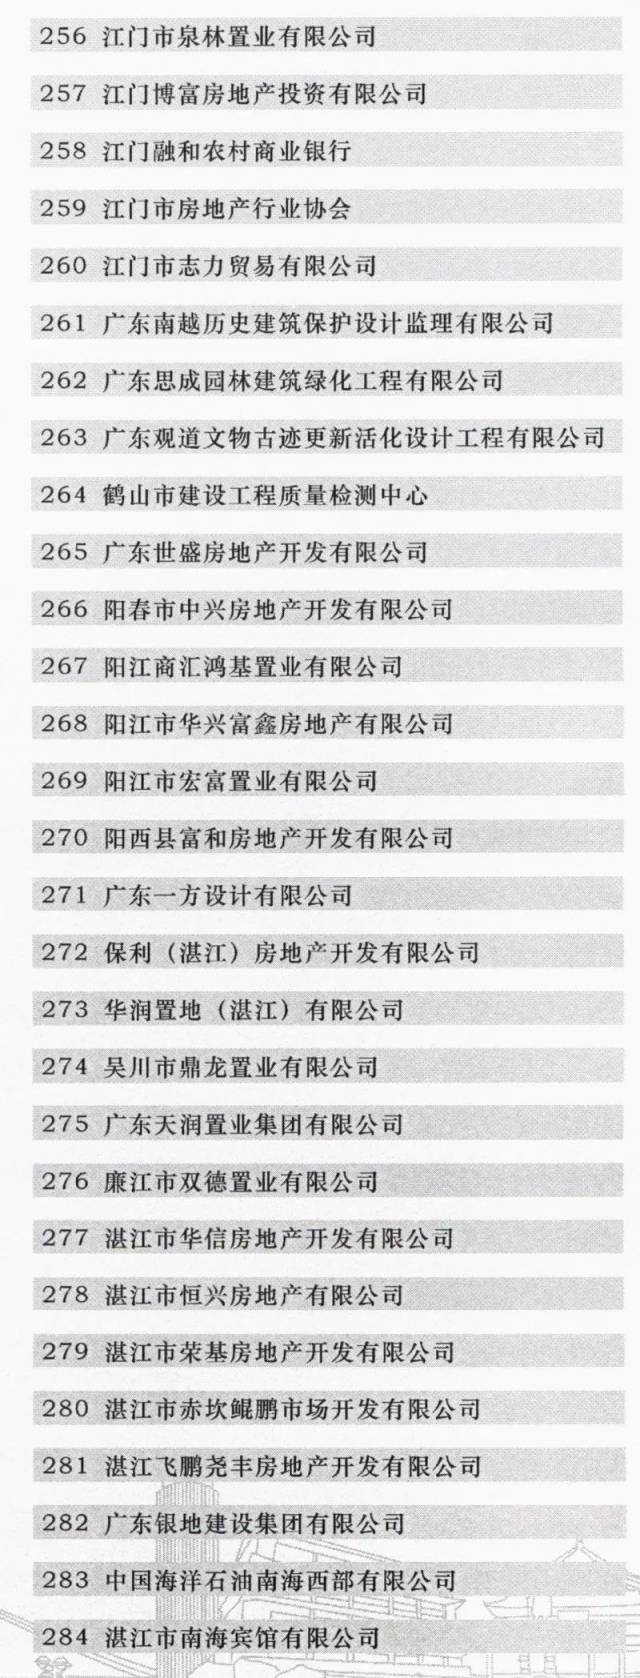 广东成立全国首个省级“三旧”改造协会  江门博富地产成为首批会员单位(图10)